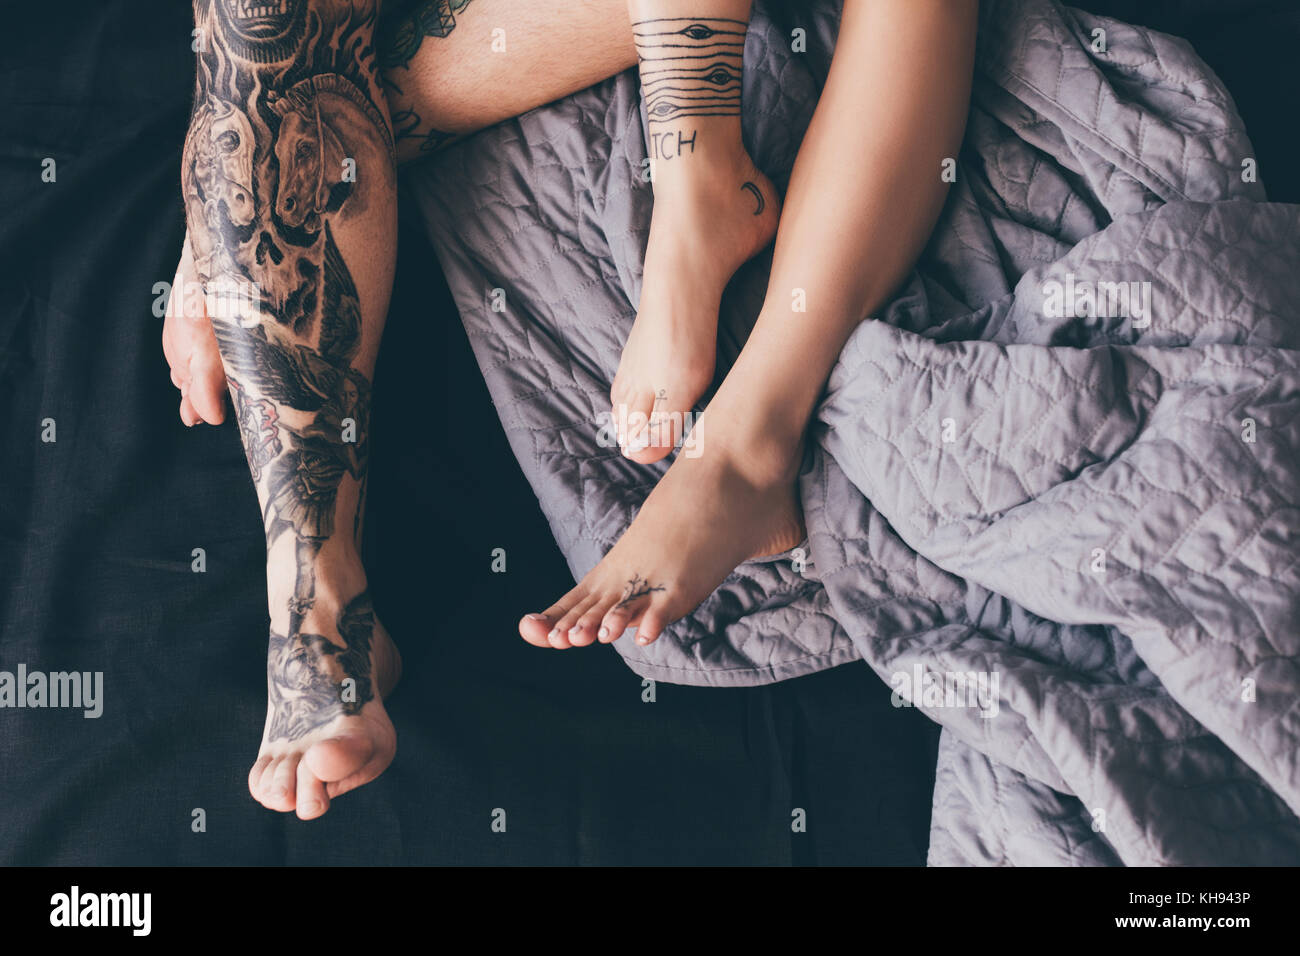 imagenes de parejas tatuadas